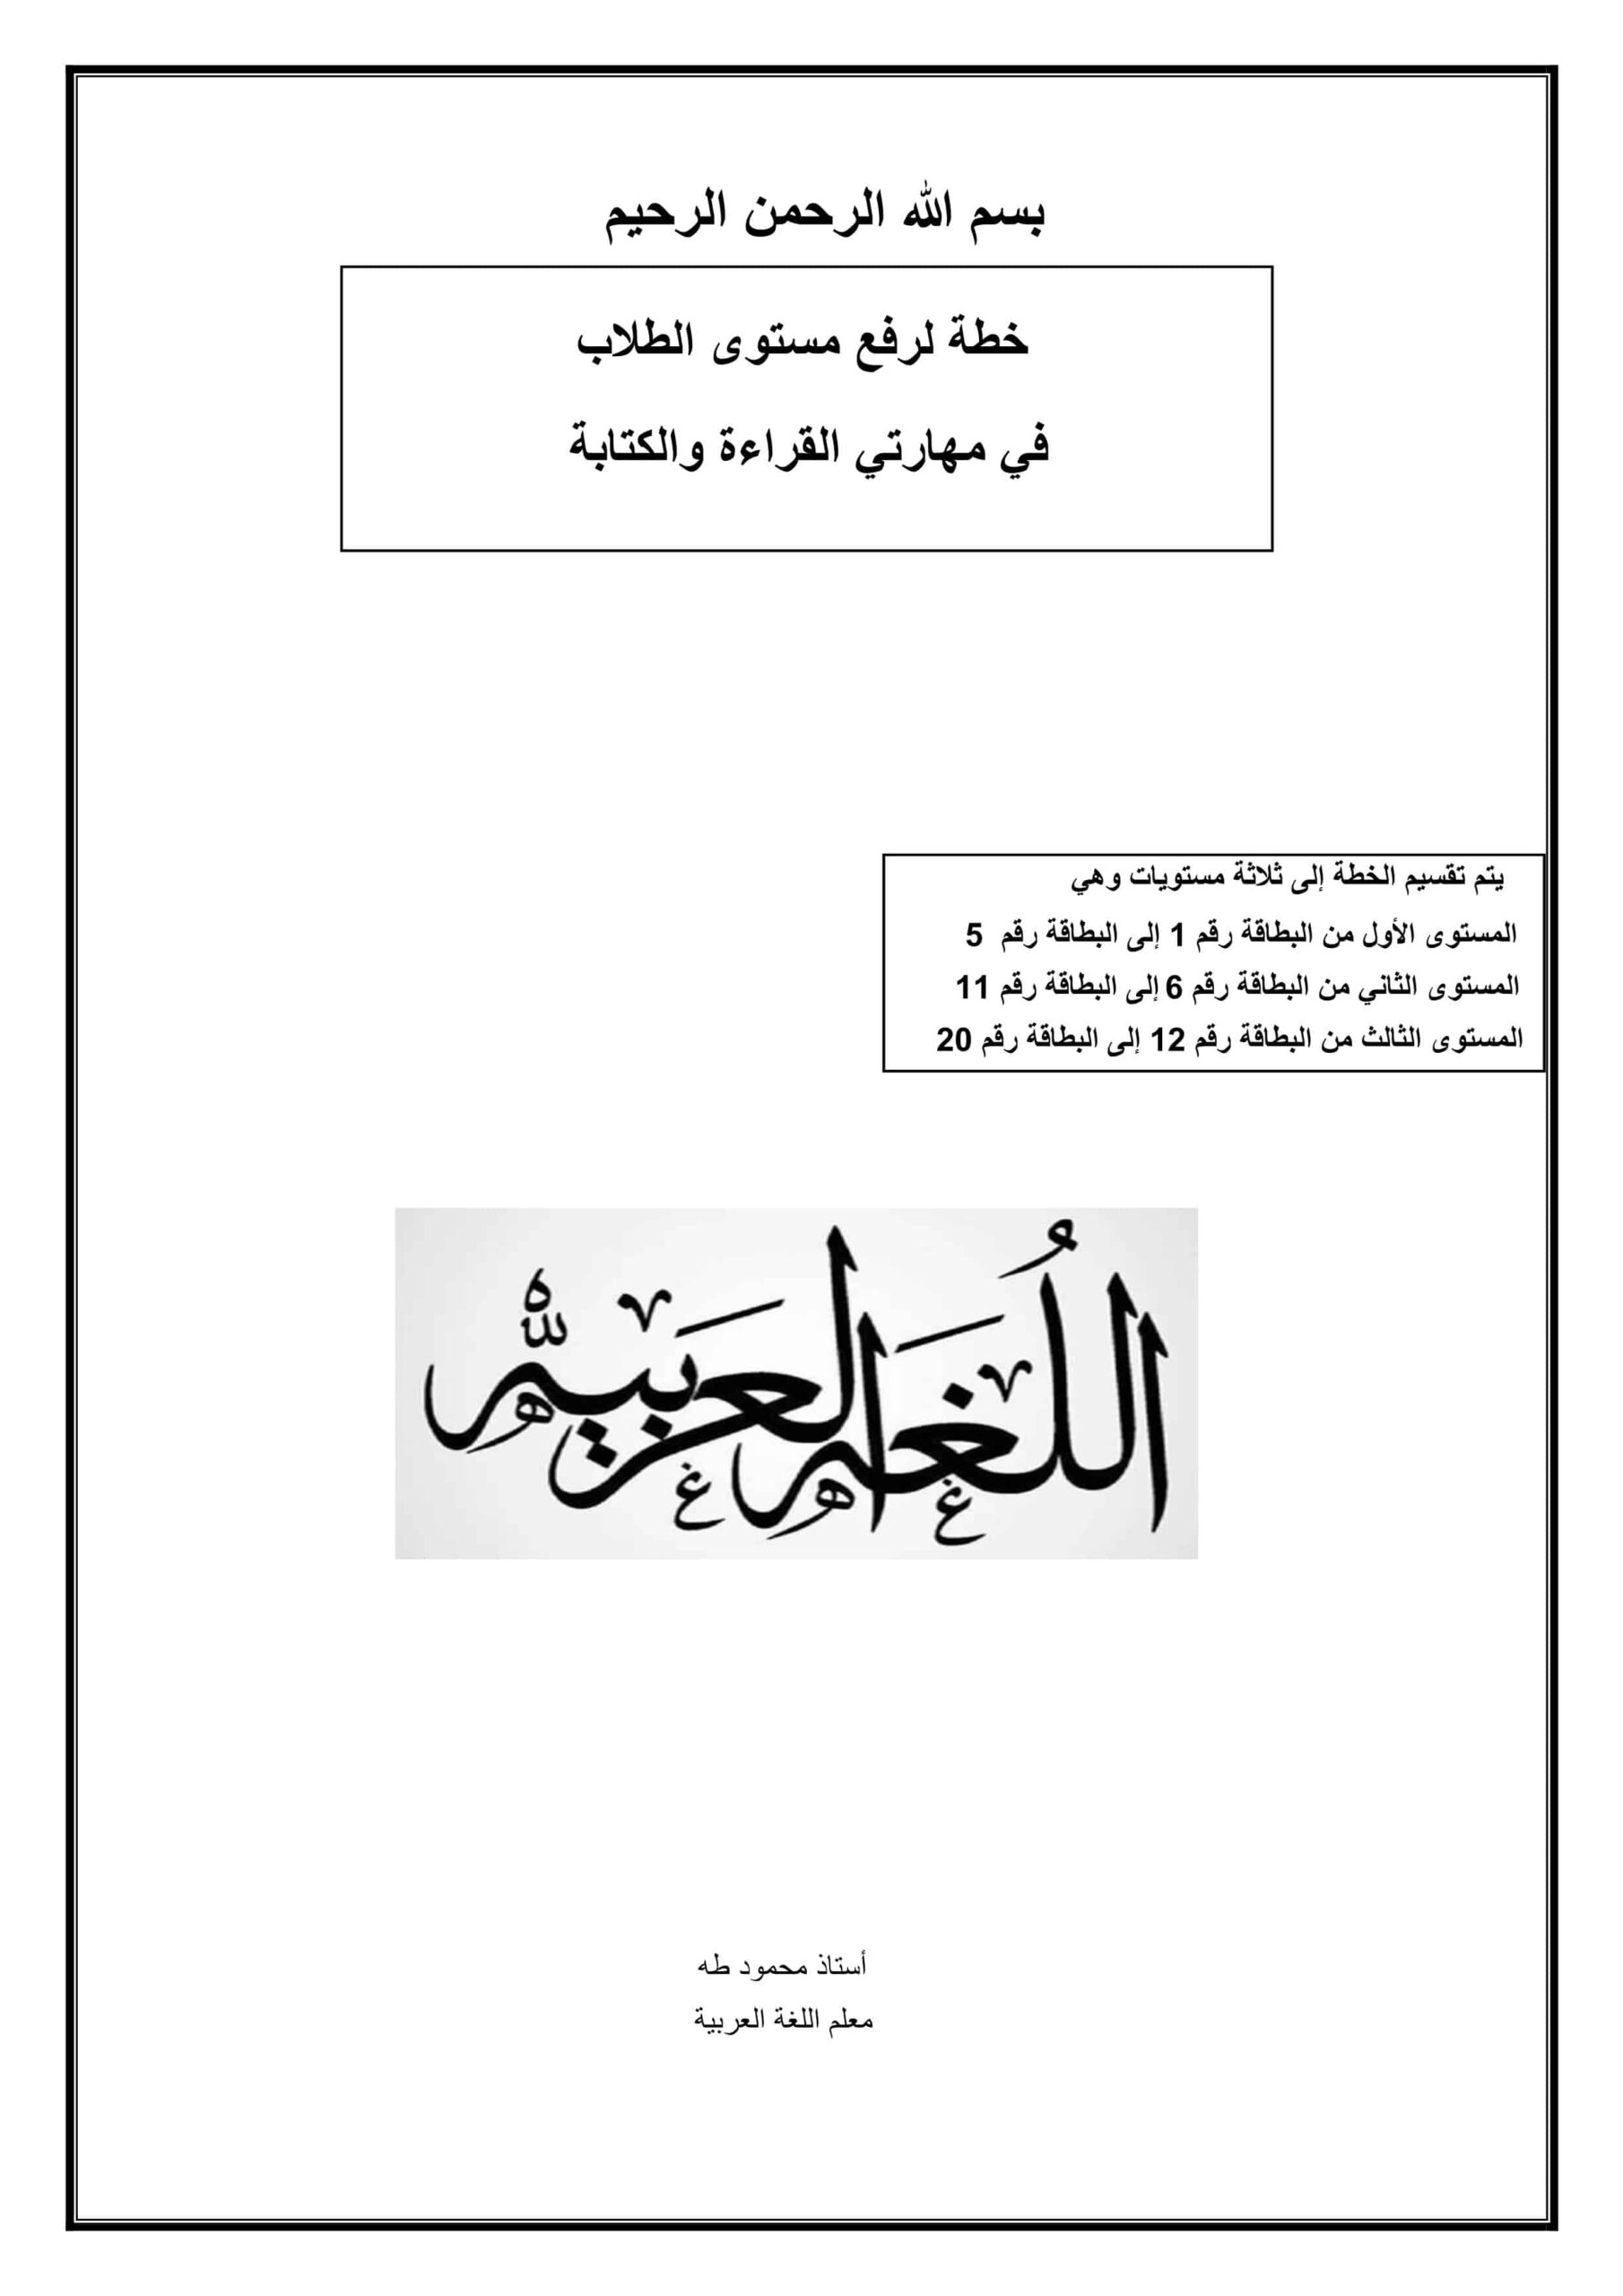 خطة لرفع مستوى الطلاب في مھارتي القراءة والكتابة اللغة العربية الصف الثالث